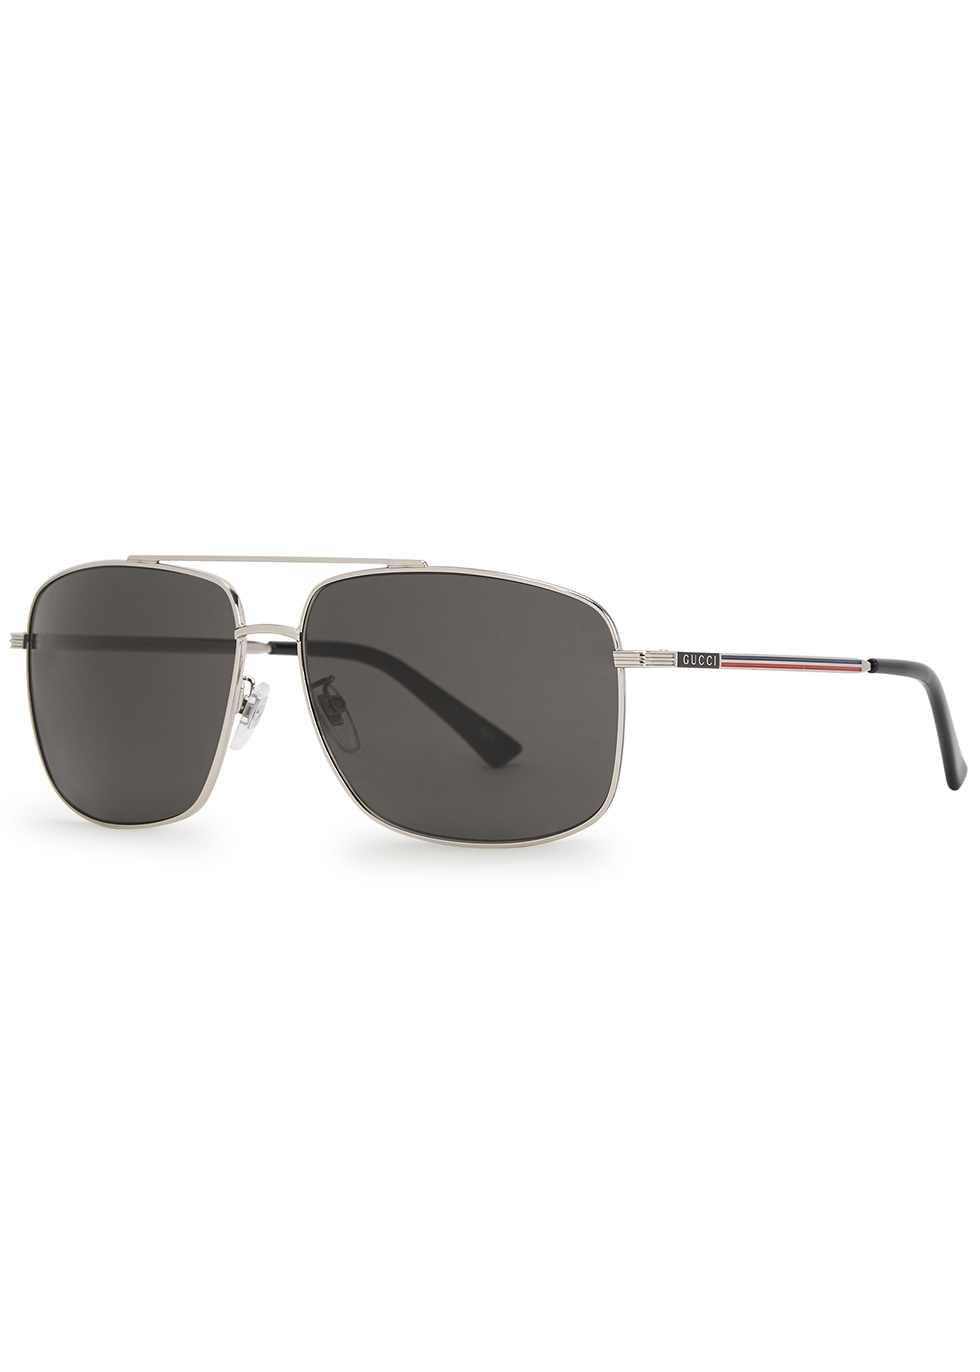 gucci silver tone aviator sunglasses